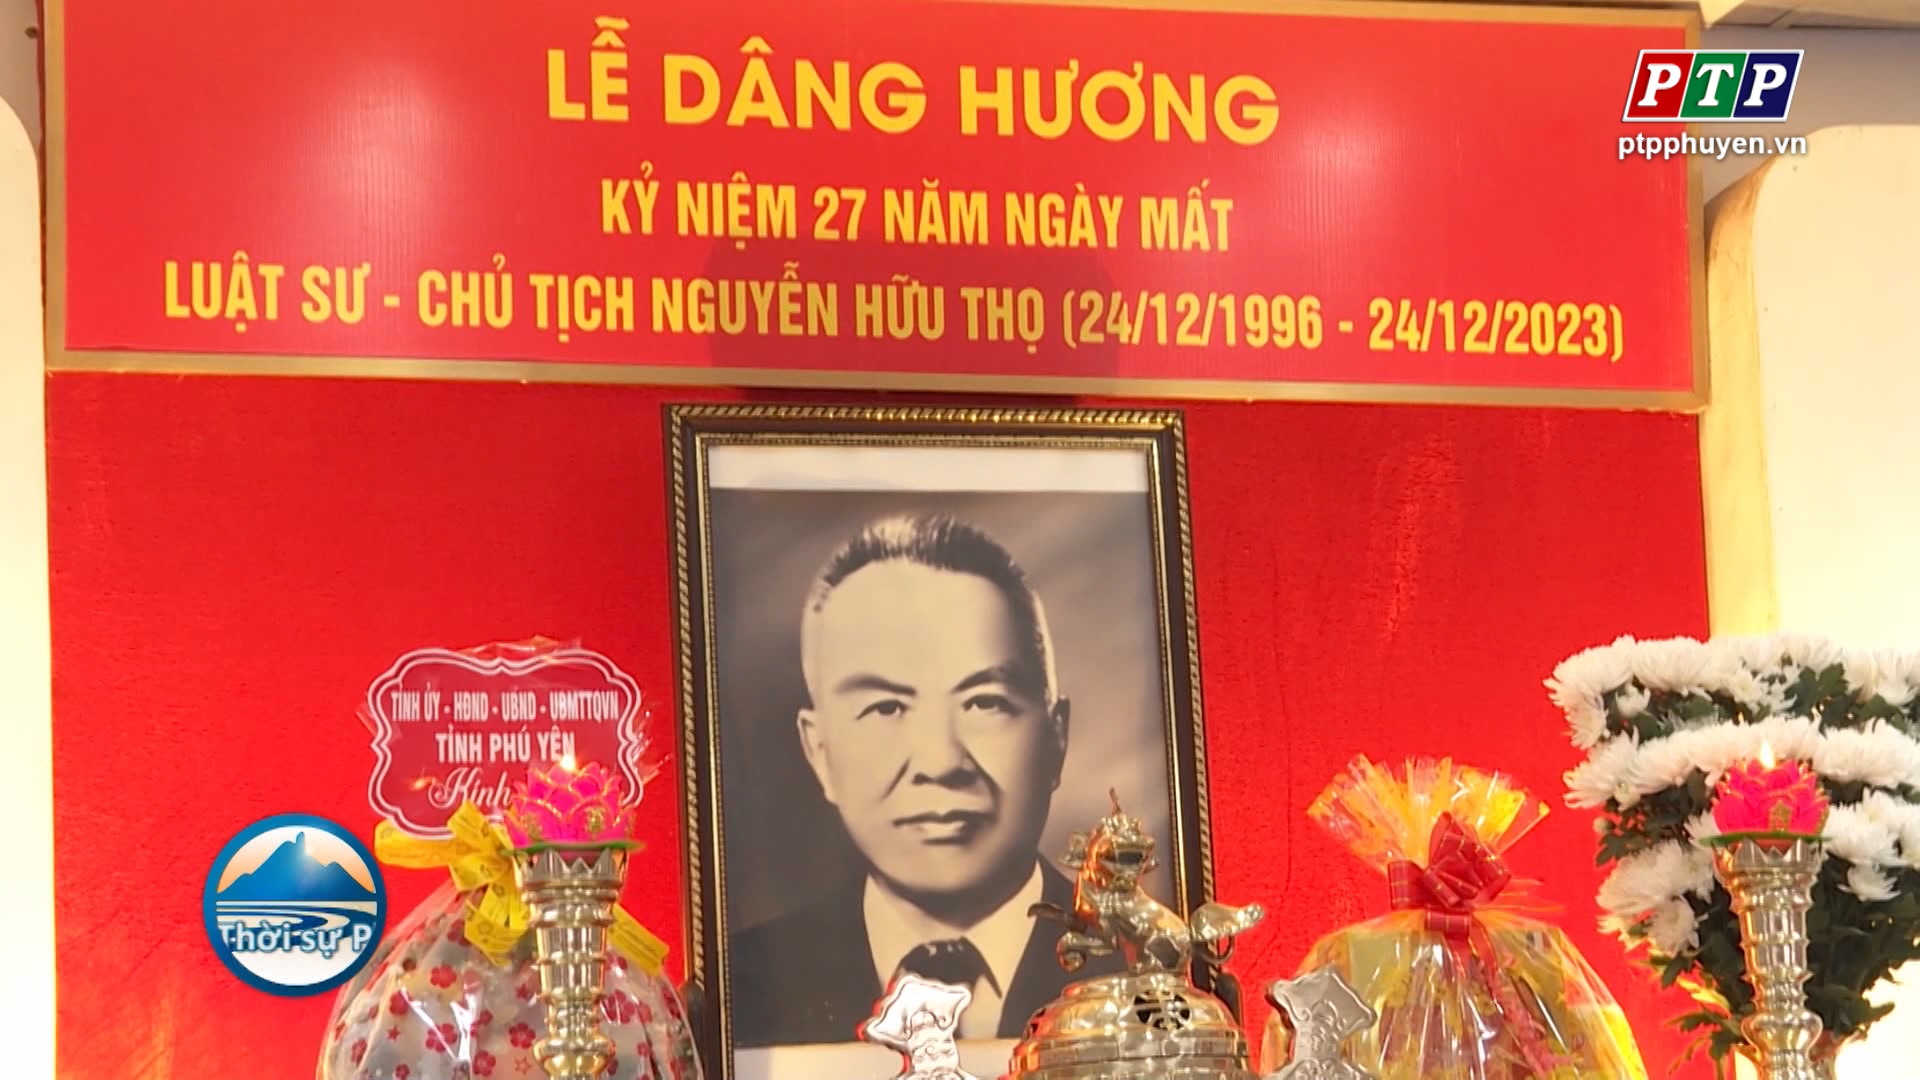 Dâng hương tưởng niệm Luật sư - Chủ tịch Nguyễn Hữu Thọ